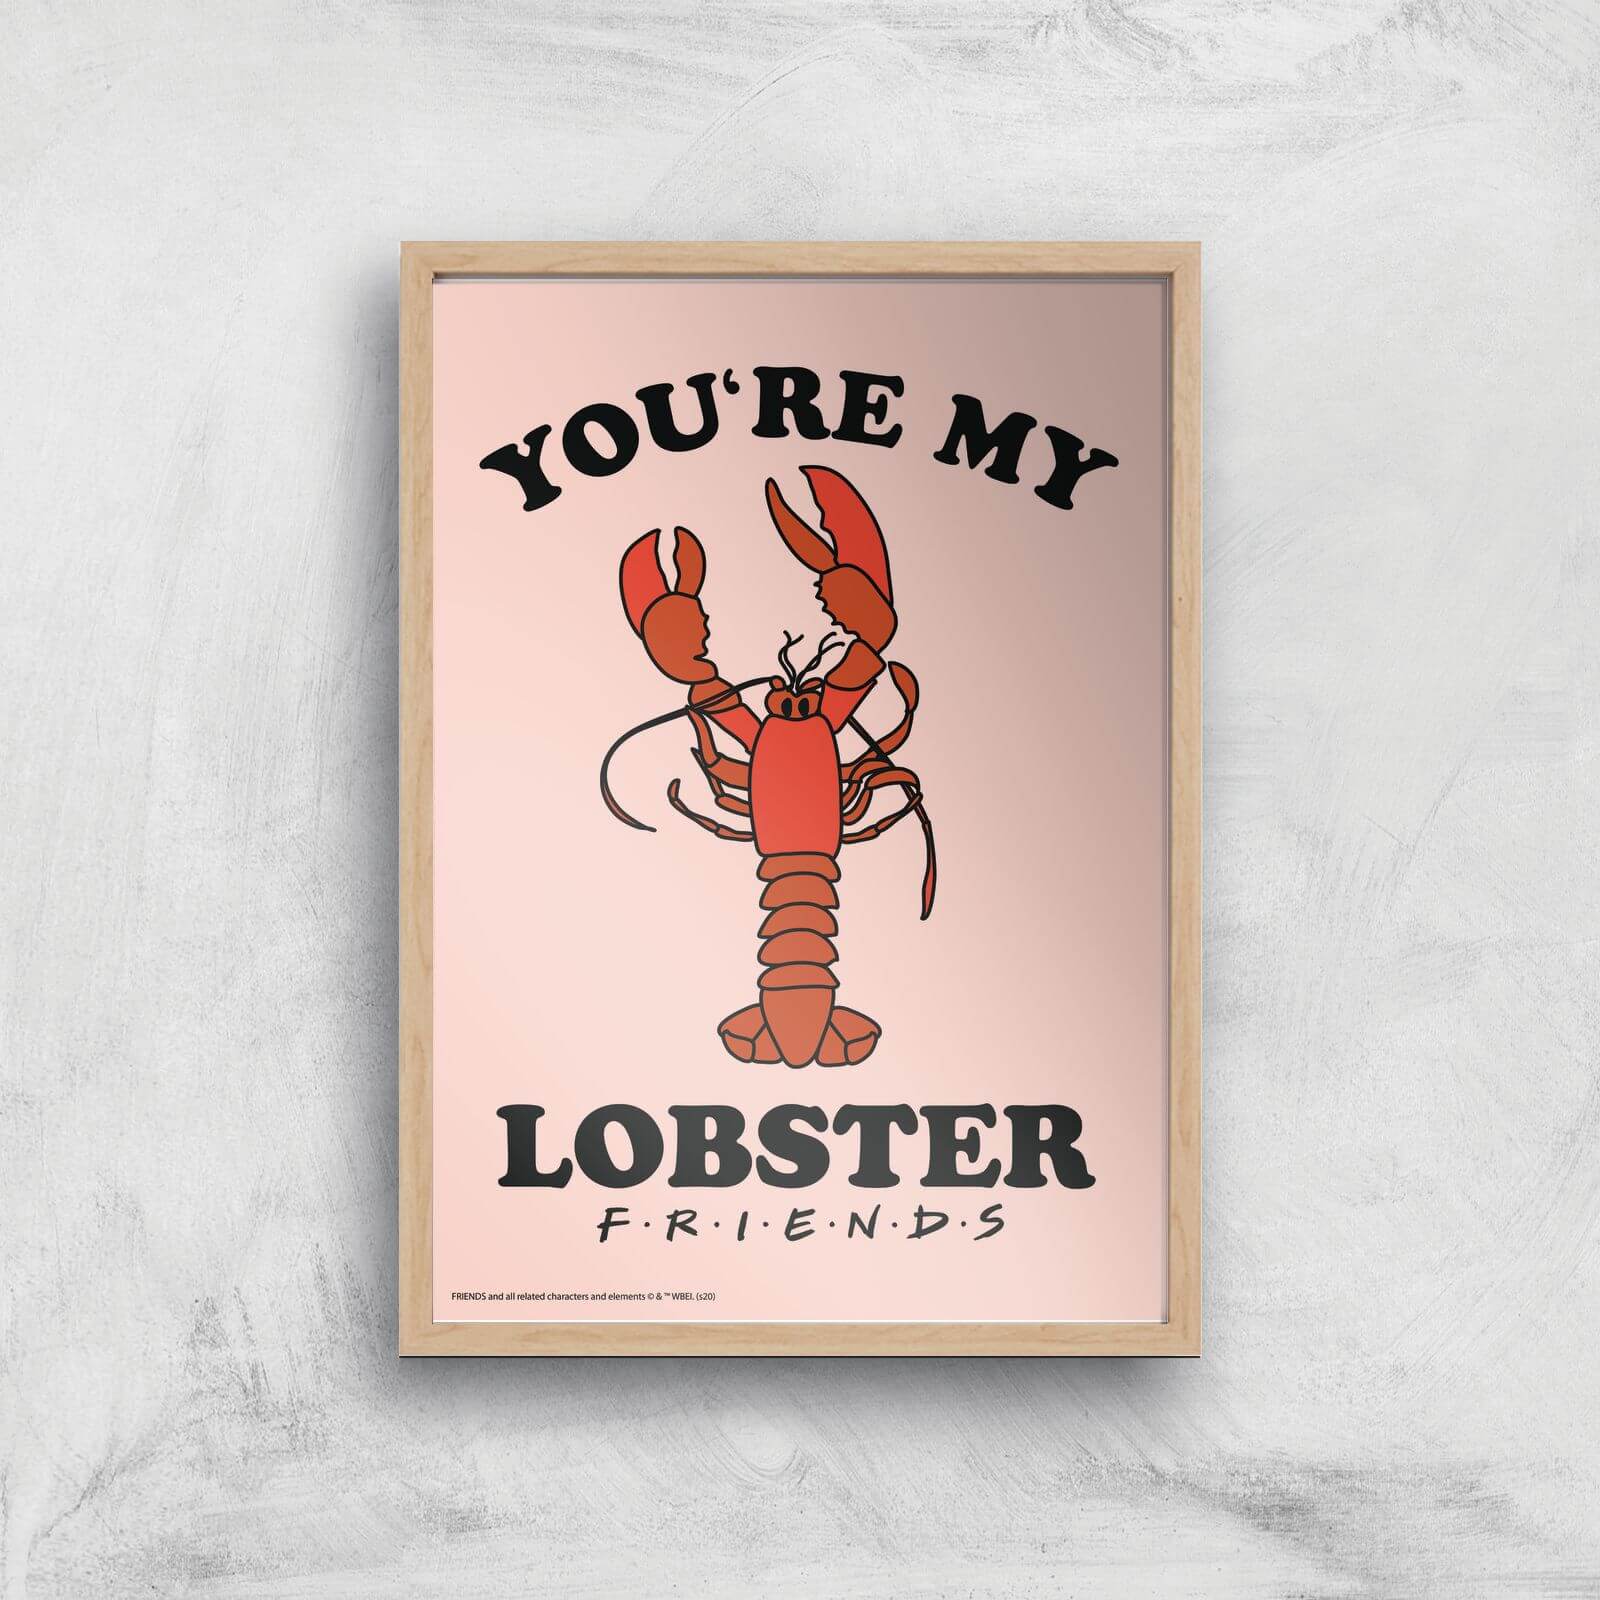 Friends Lobster Giclee Art Print - A3 - Wooden Frame